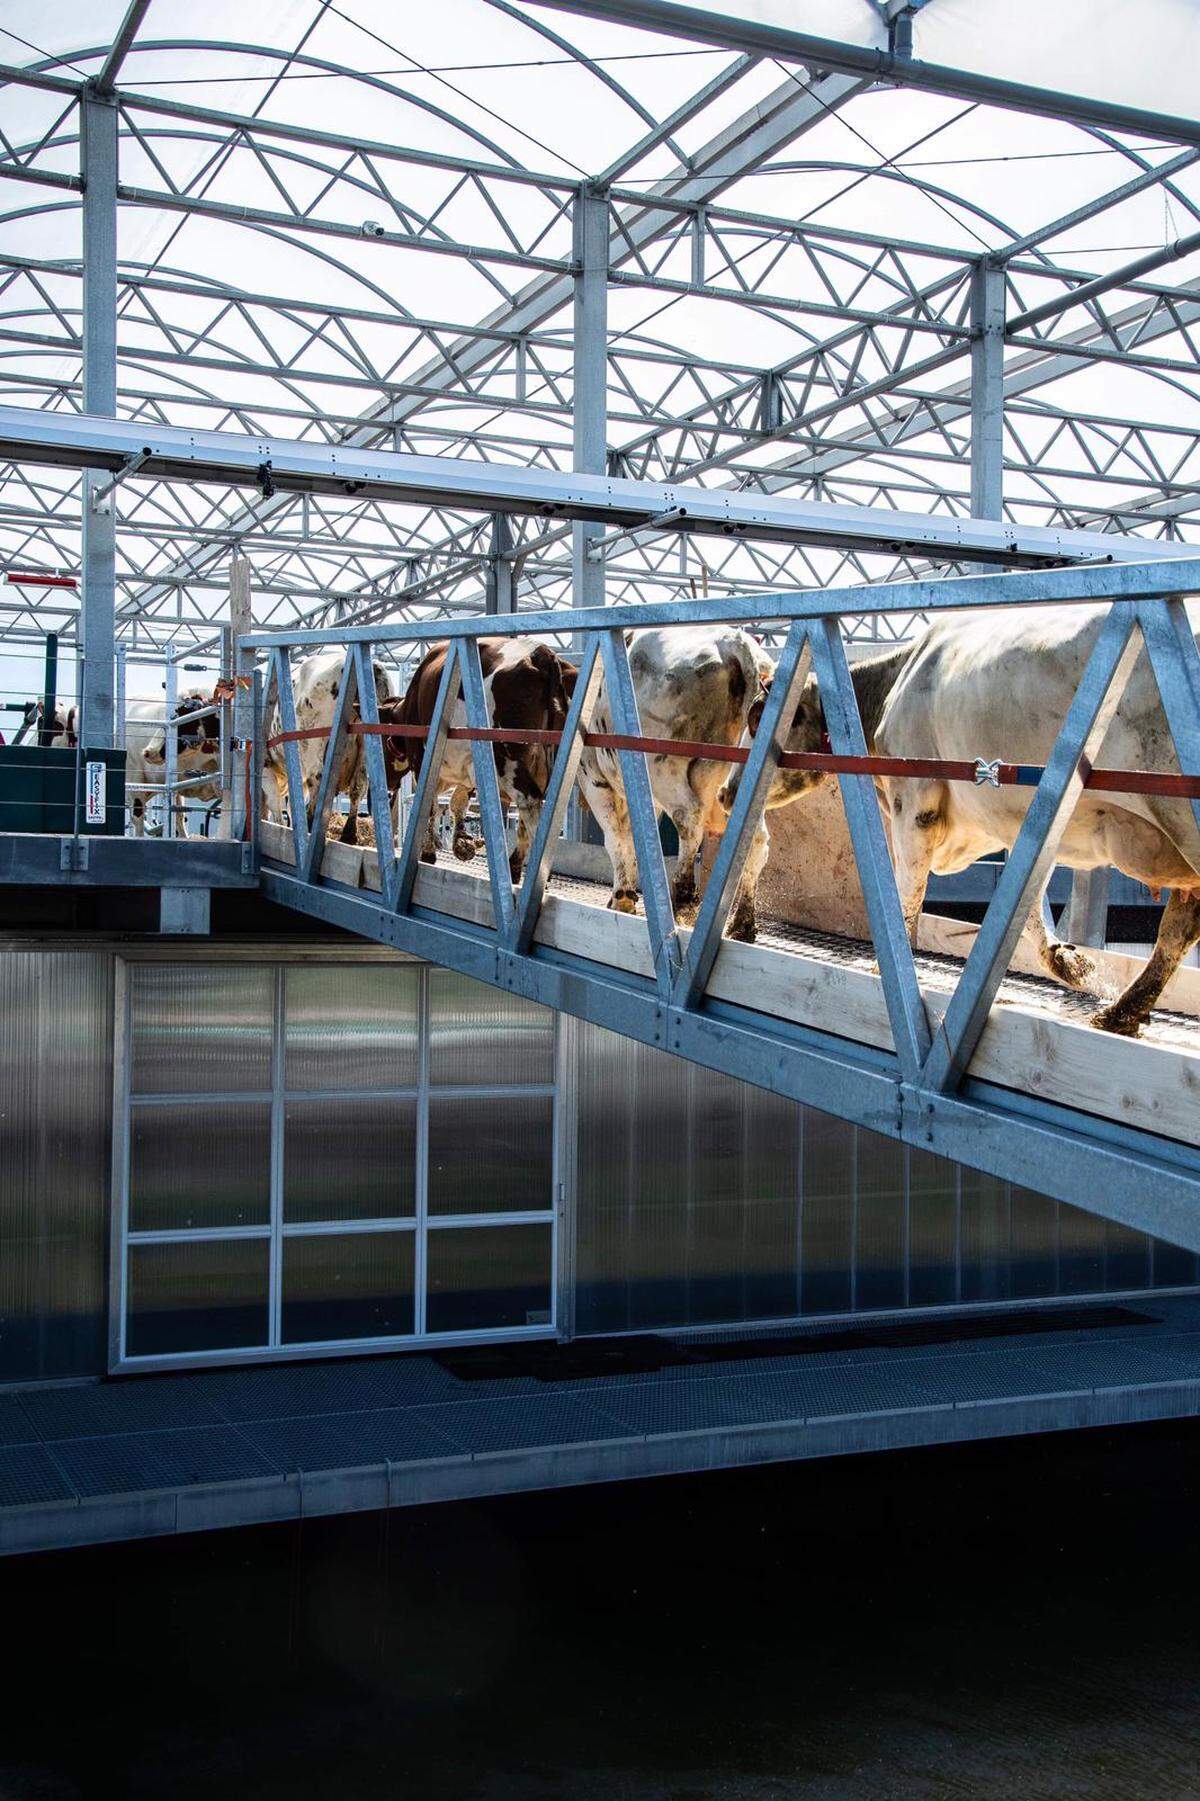 2019 betreten rund vierzig Milchkühe den schwimmenden Stall im Rotterdamer Hafen. Die Farm auf dem Wasser spart Landfläche. Zudem sollen die Tiere künftig mit Abfällen aus städtischer Industrie und Gewerbe gefüttert werden. In der Stadt wiederum will man dann Produkte aus ihrer Milch verkaufen. Diese kurzen Transportwege schonen das Klima und Städter*innen können Landwirtschaft wieder direkt sehen.